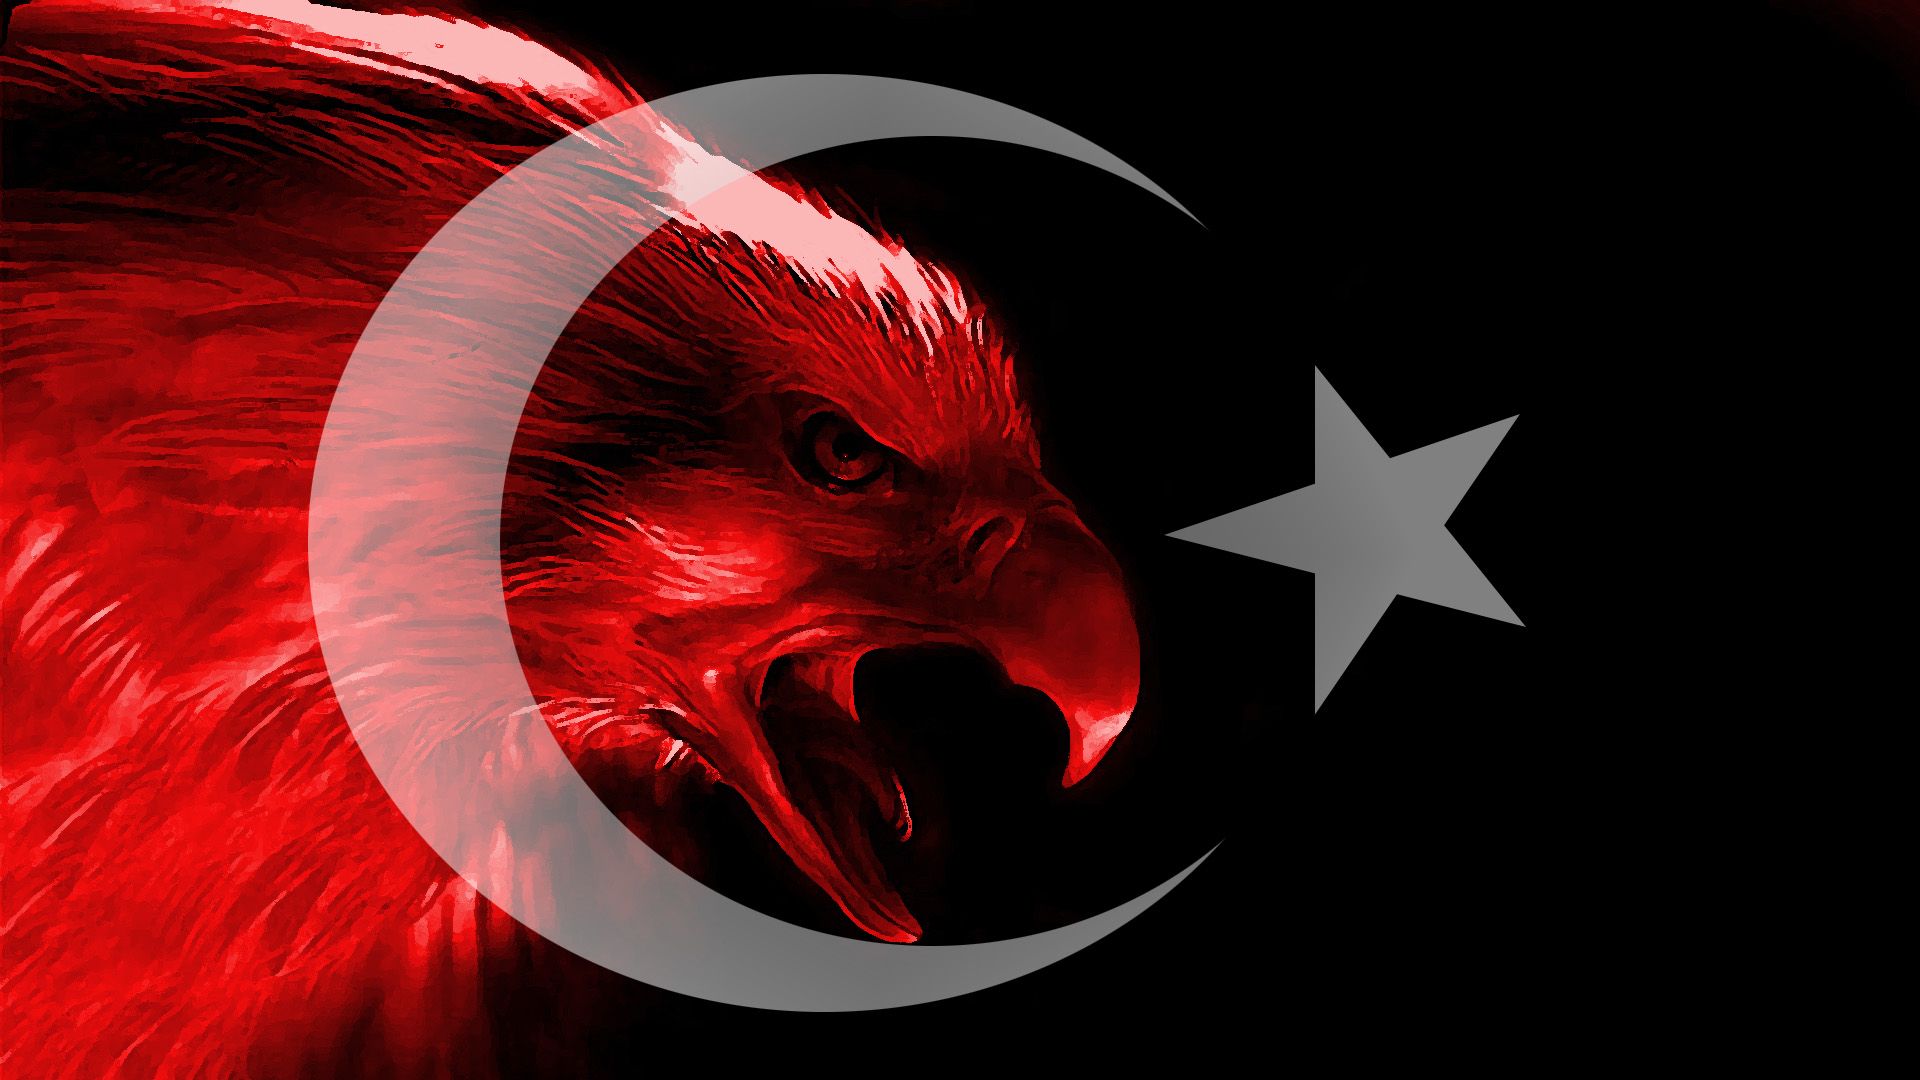 Kartal resimli turk bayraklari 8